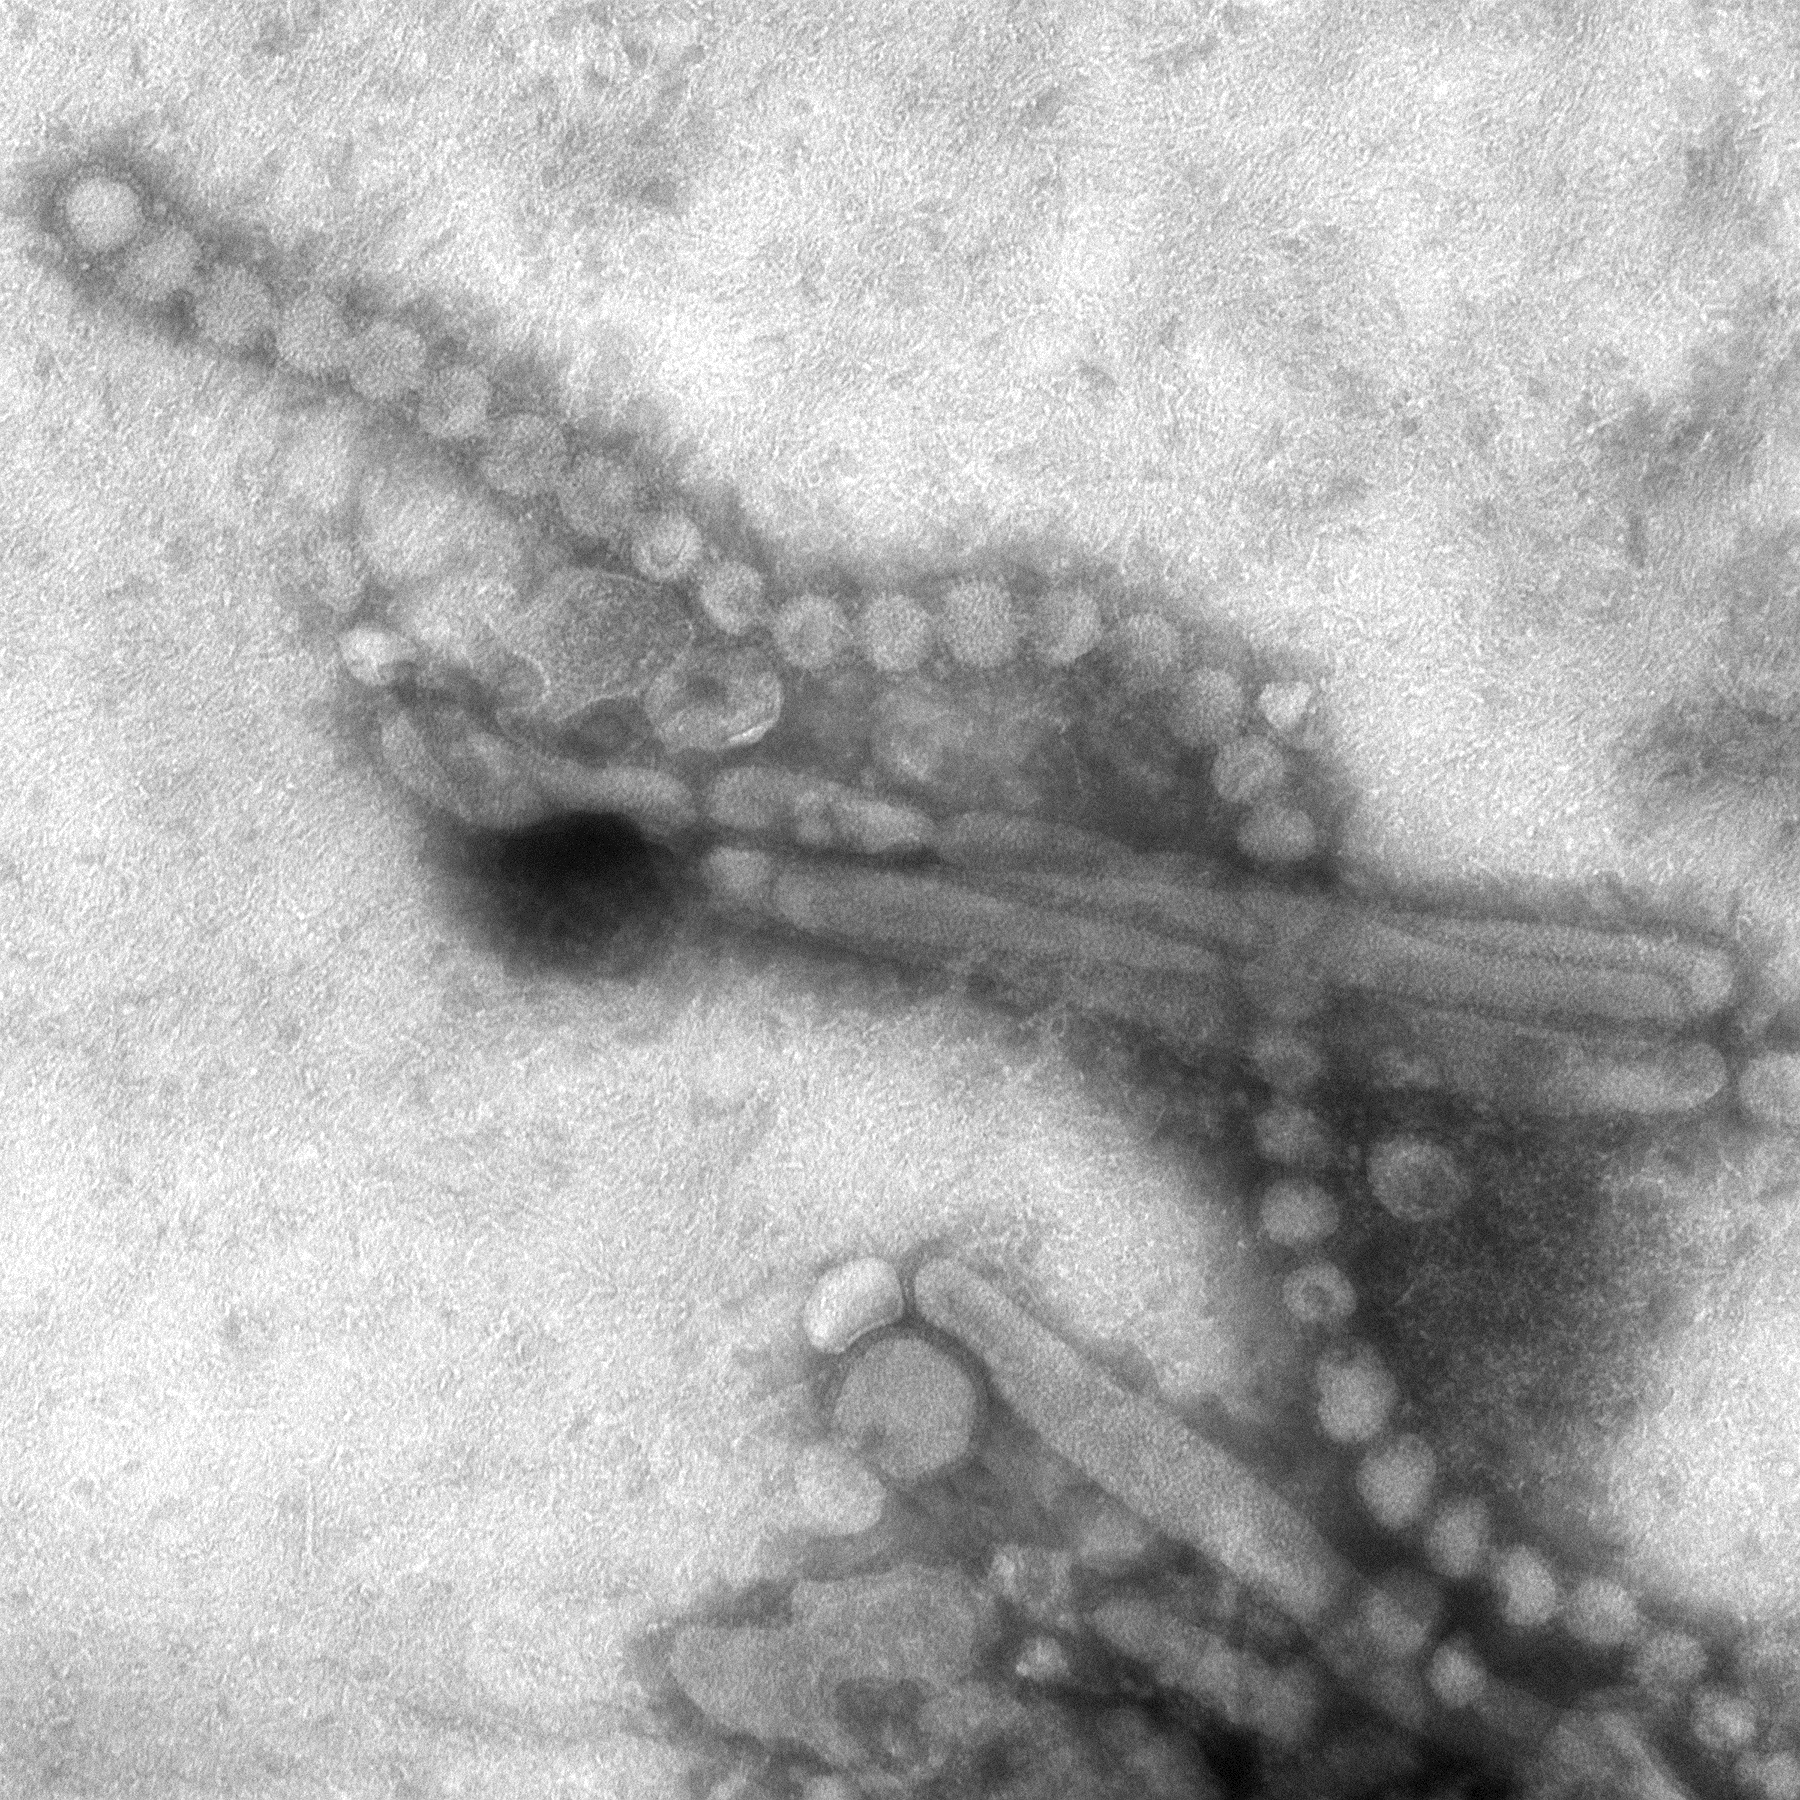 H7N9 influenza A avian